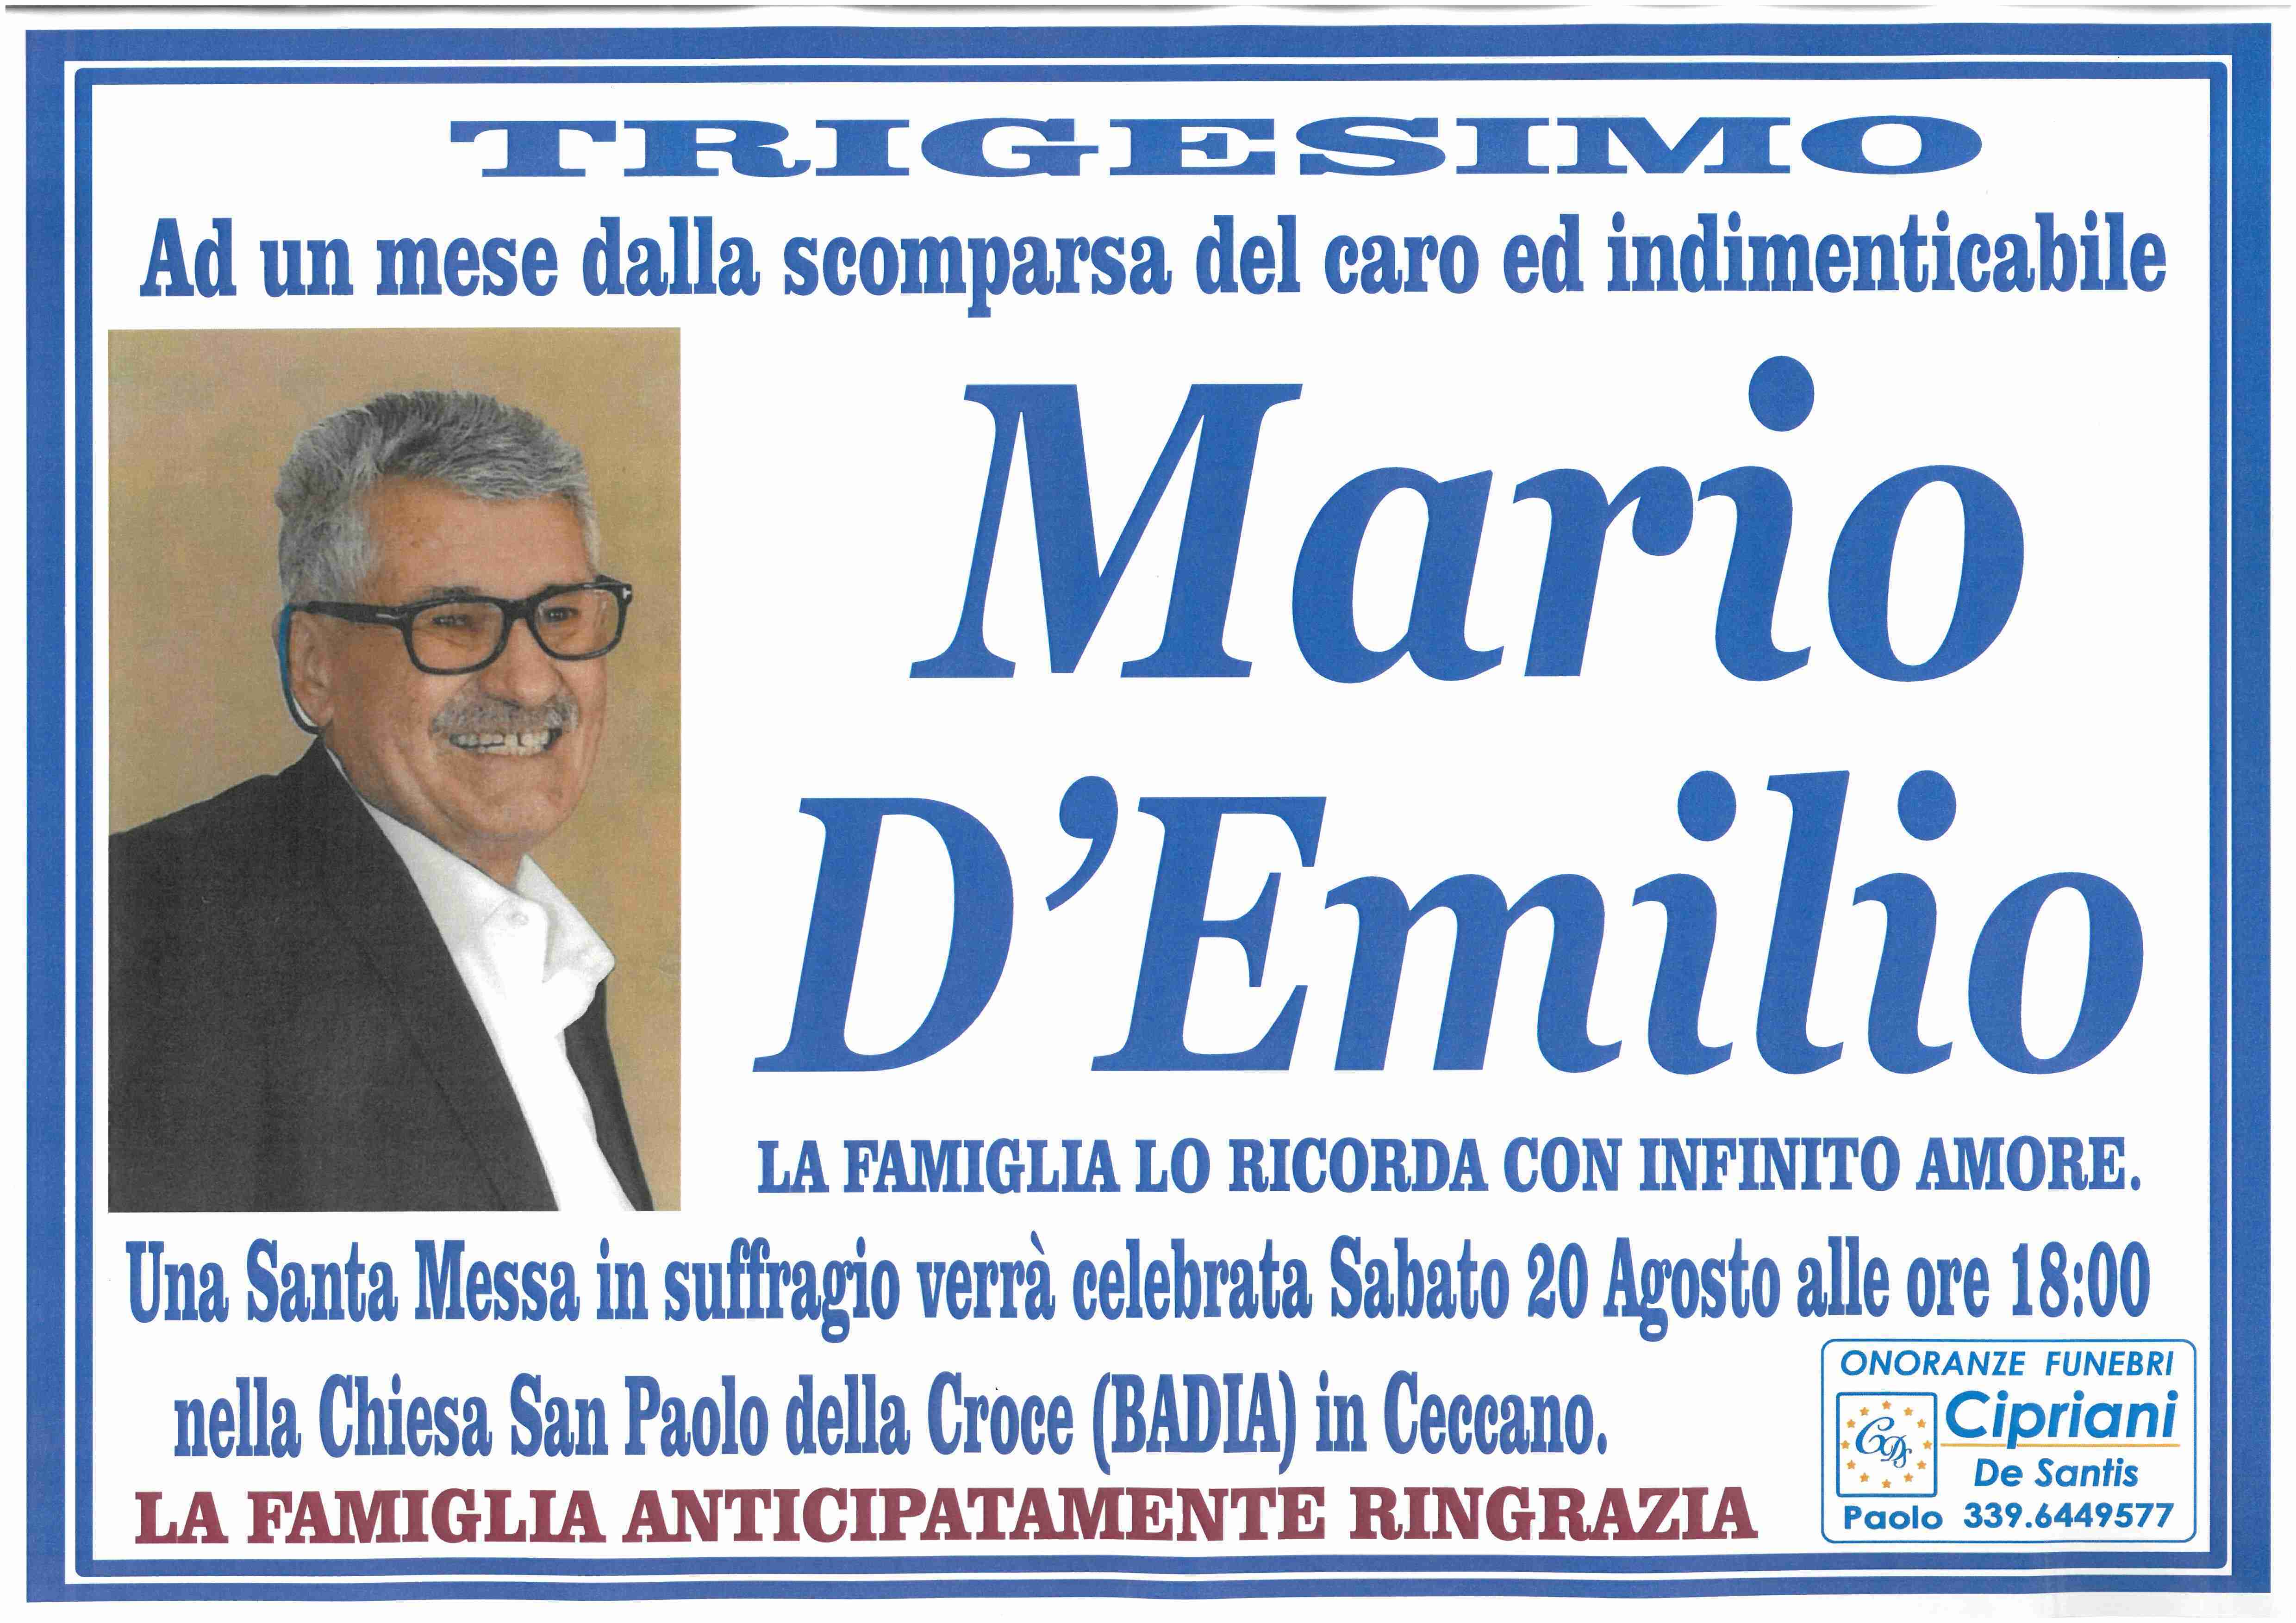 Mario D'Emilio